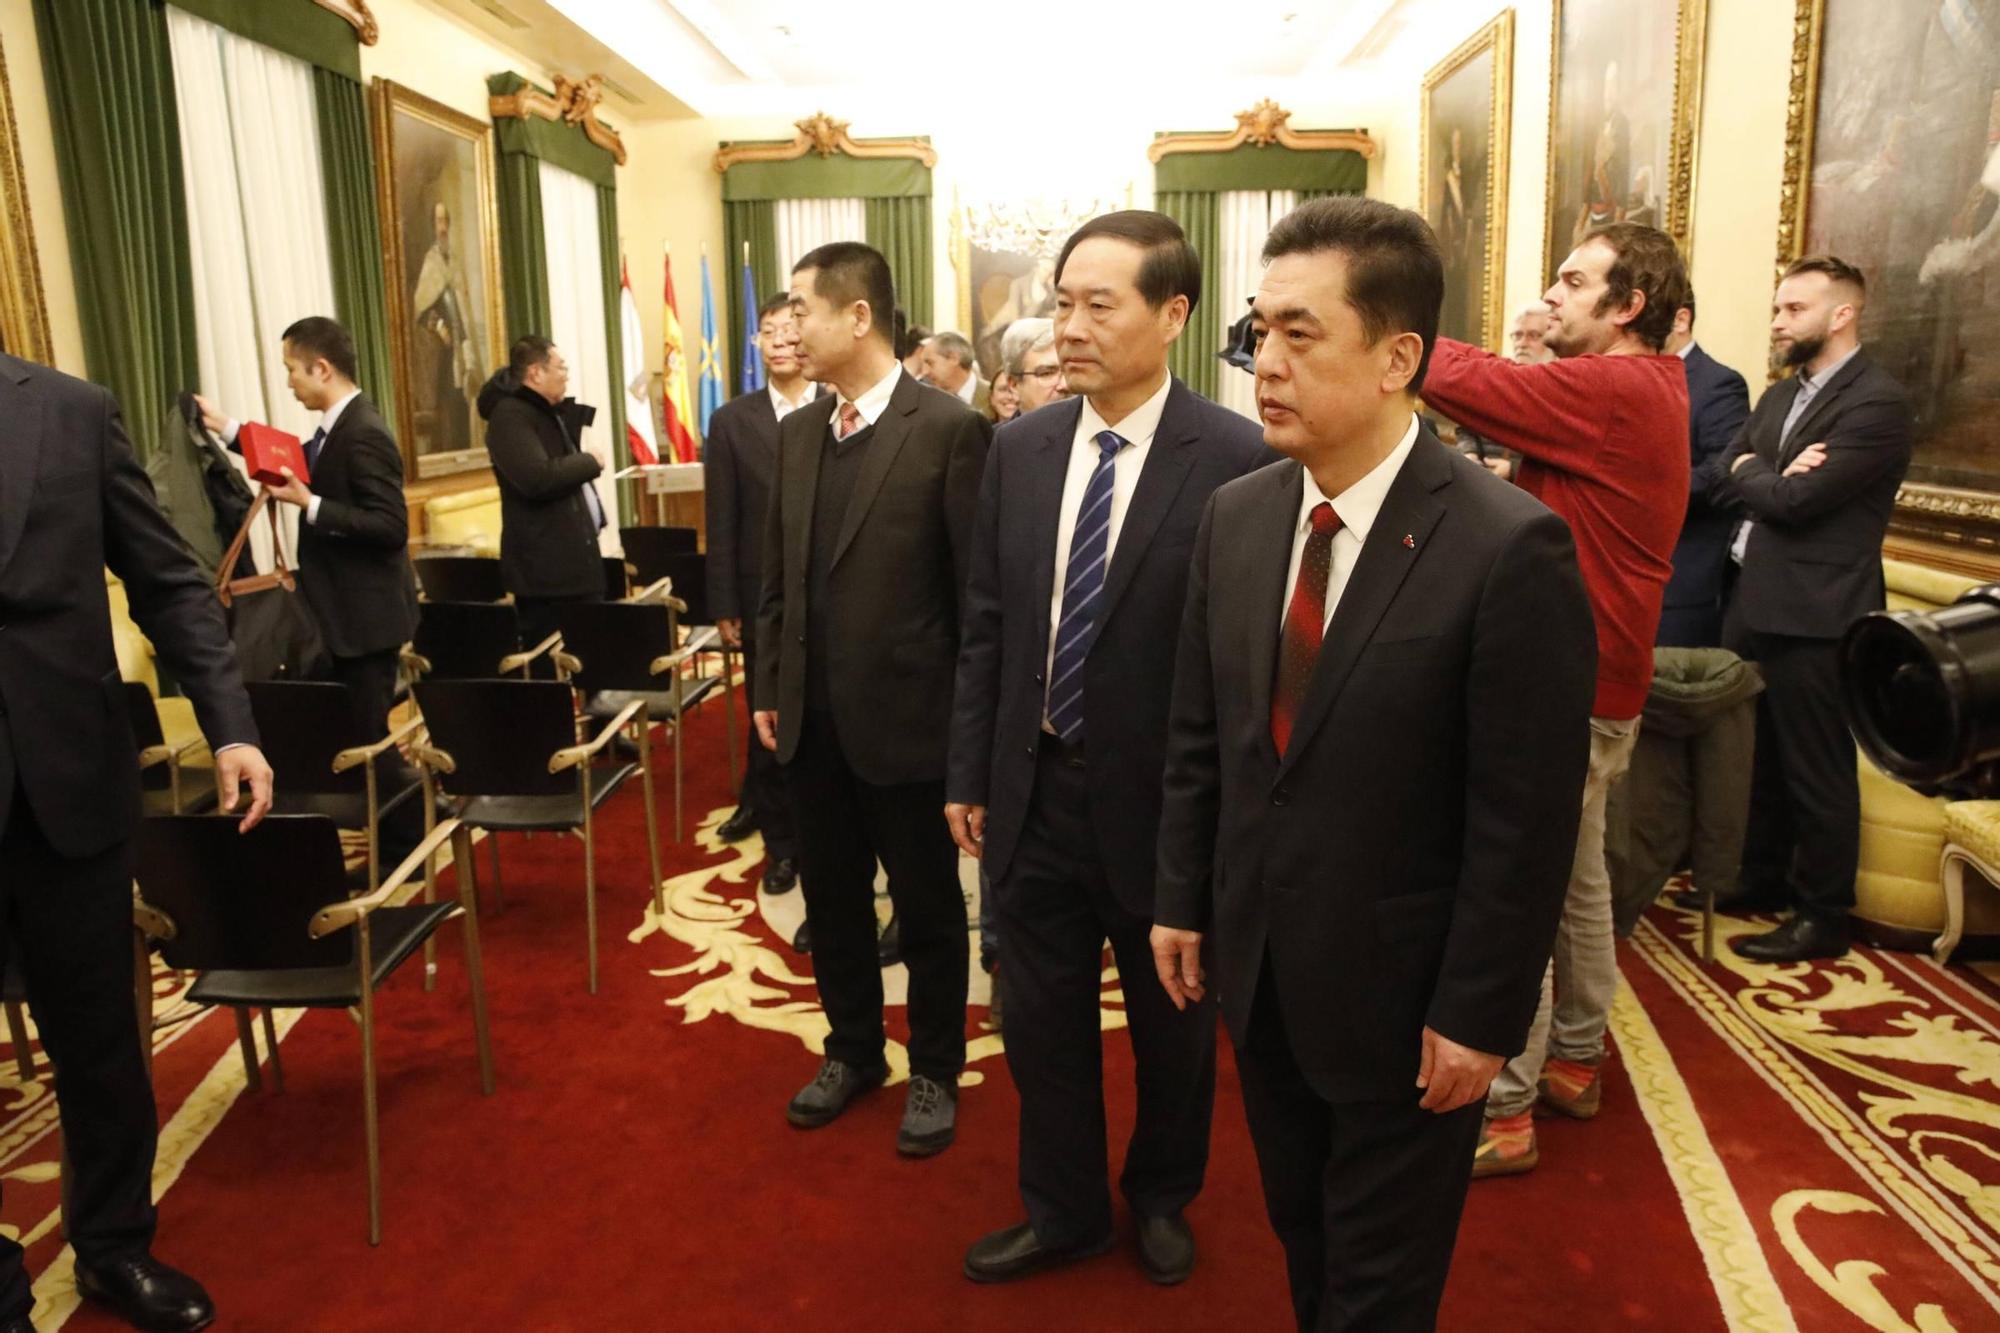 Así fue la recepción institucional a la delegación china de Yantai en Gijón (en imágenes)